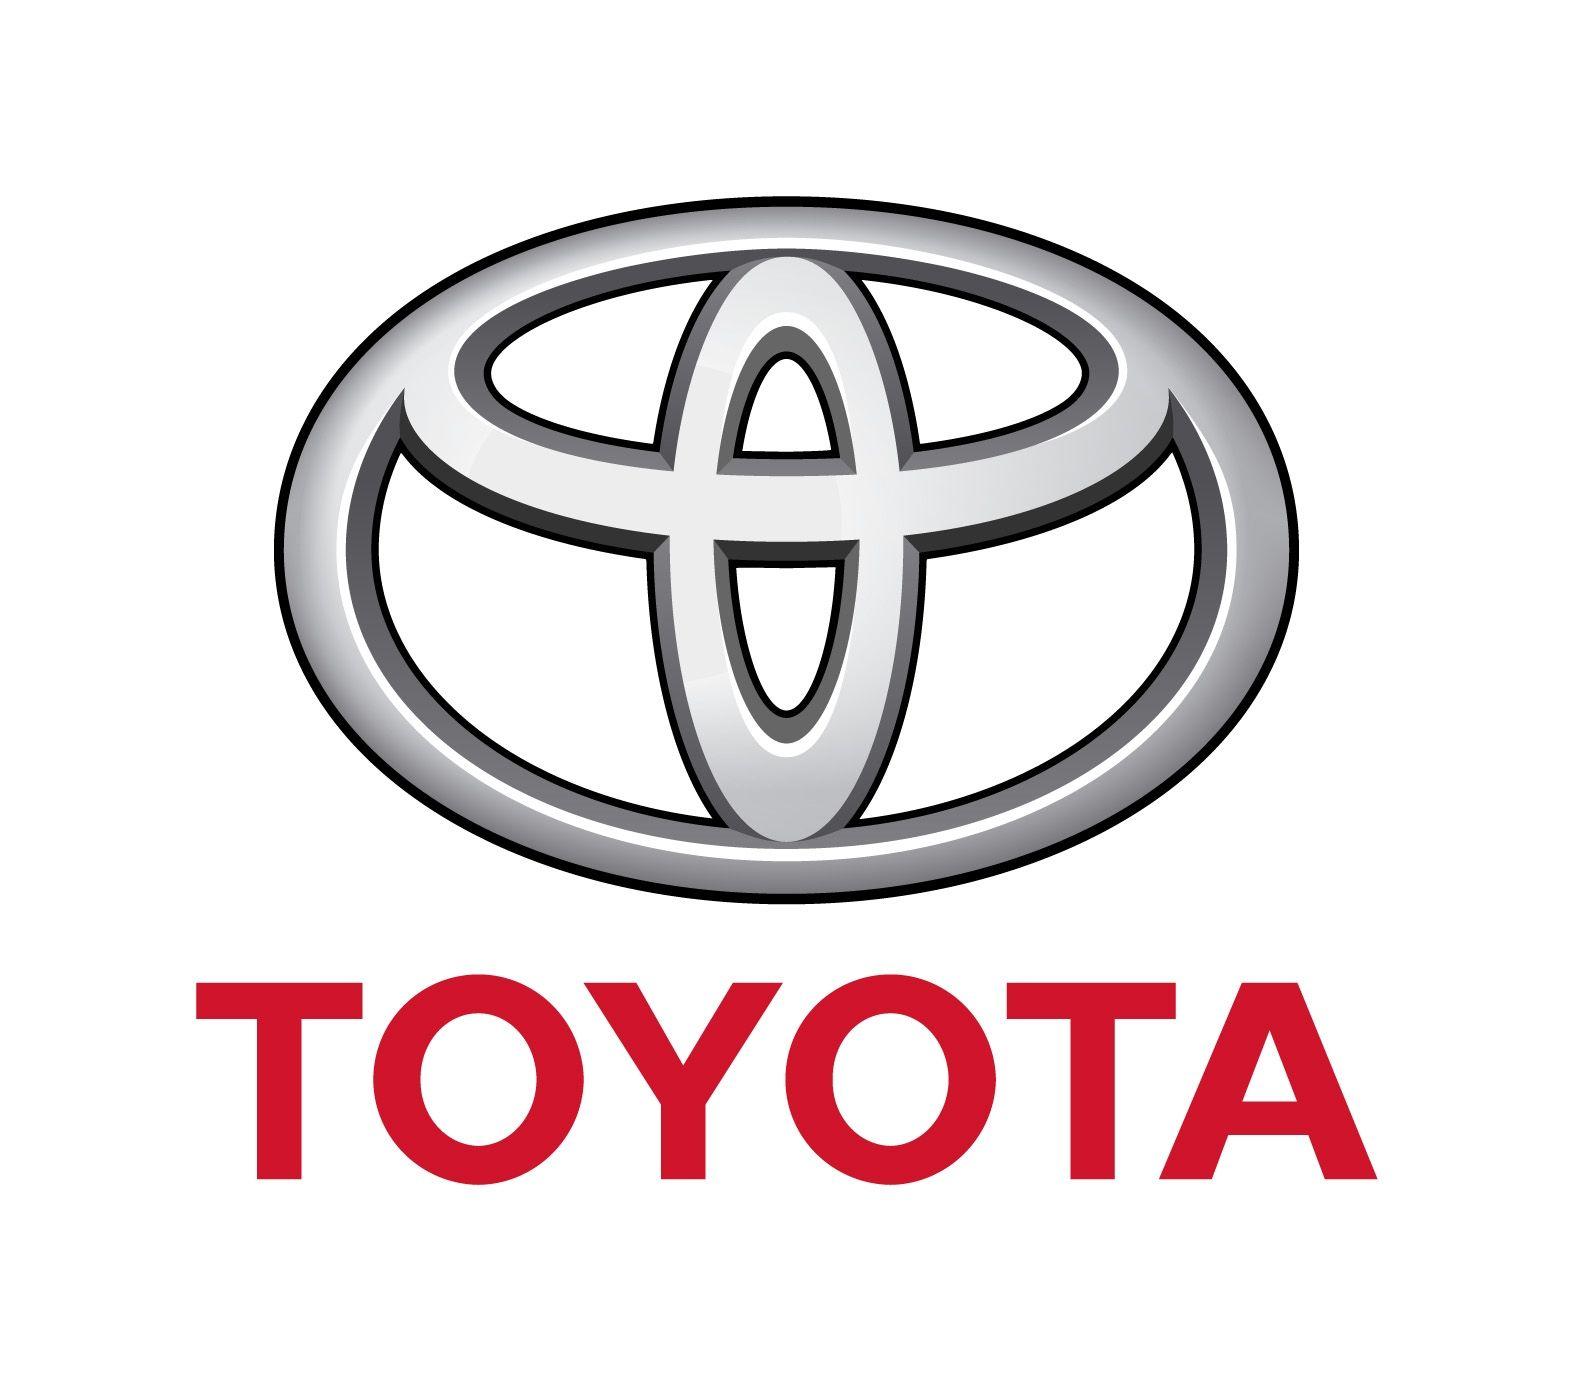 Major Cars Company Logo - Japanese Car Brands, Companies and Manufacturers | Car Brand Names.com